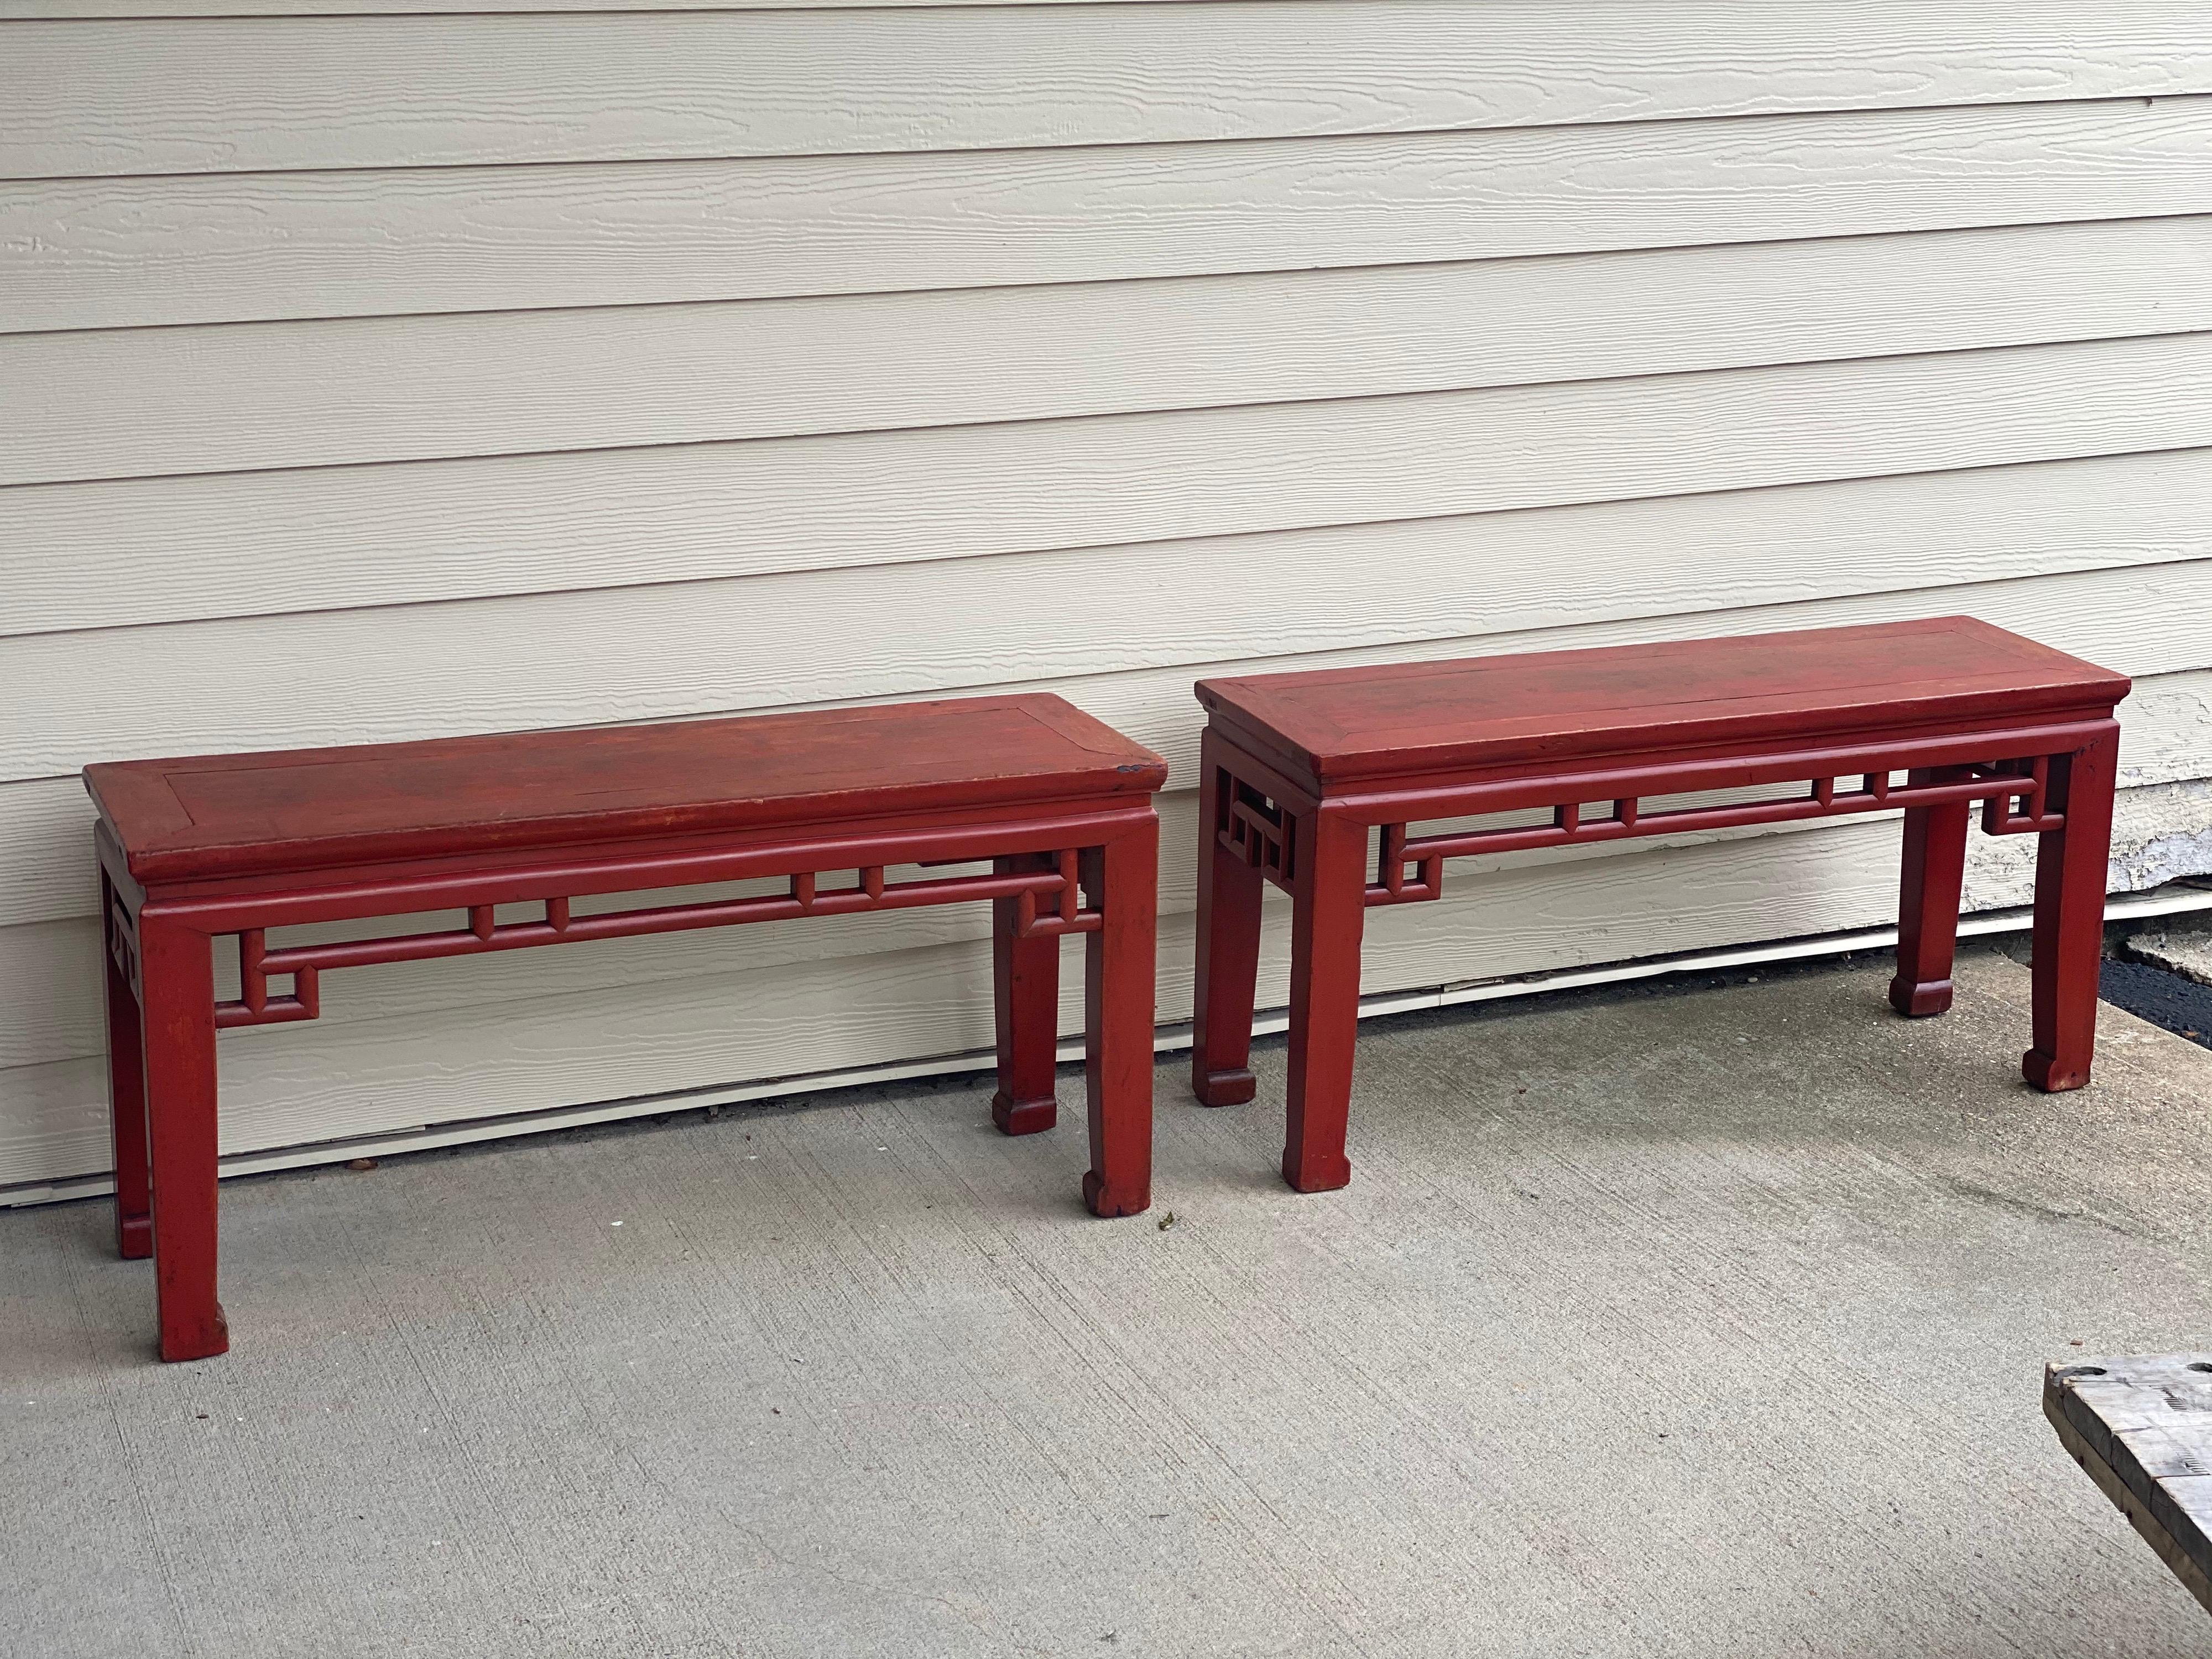 Paar chinesische rot lackierte niedrige Tische/Bänke
Schöne Laubsägearbeiten an Zarge und Seiten. Klassische chinesische rote Farbe. Hufschuhe. 
Erwartete Abnutzungserscheinungen, vor allem an der Oberseite.
Maße: 39.25